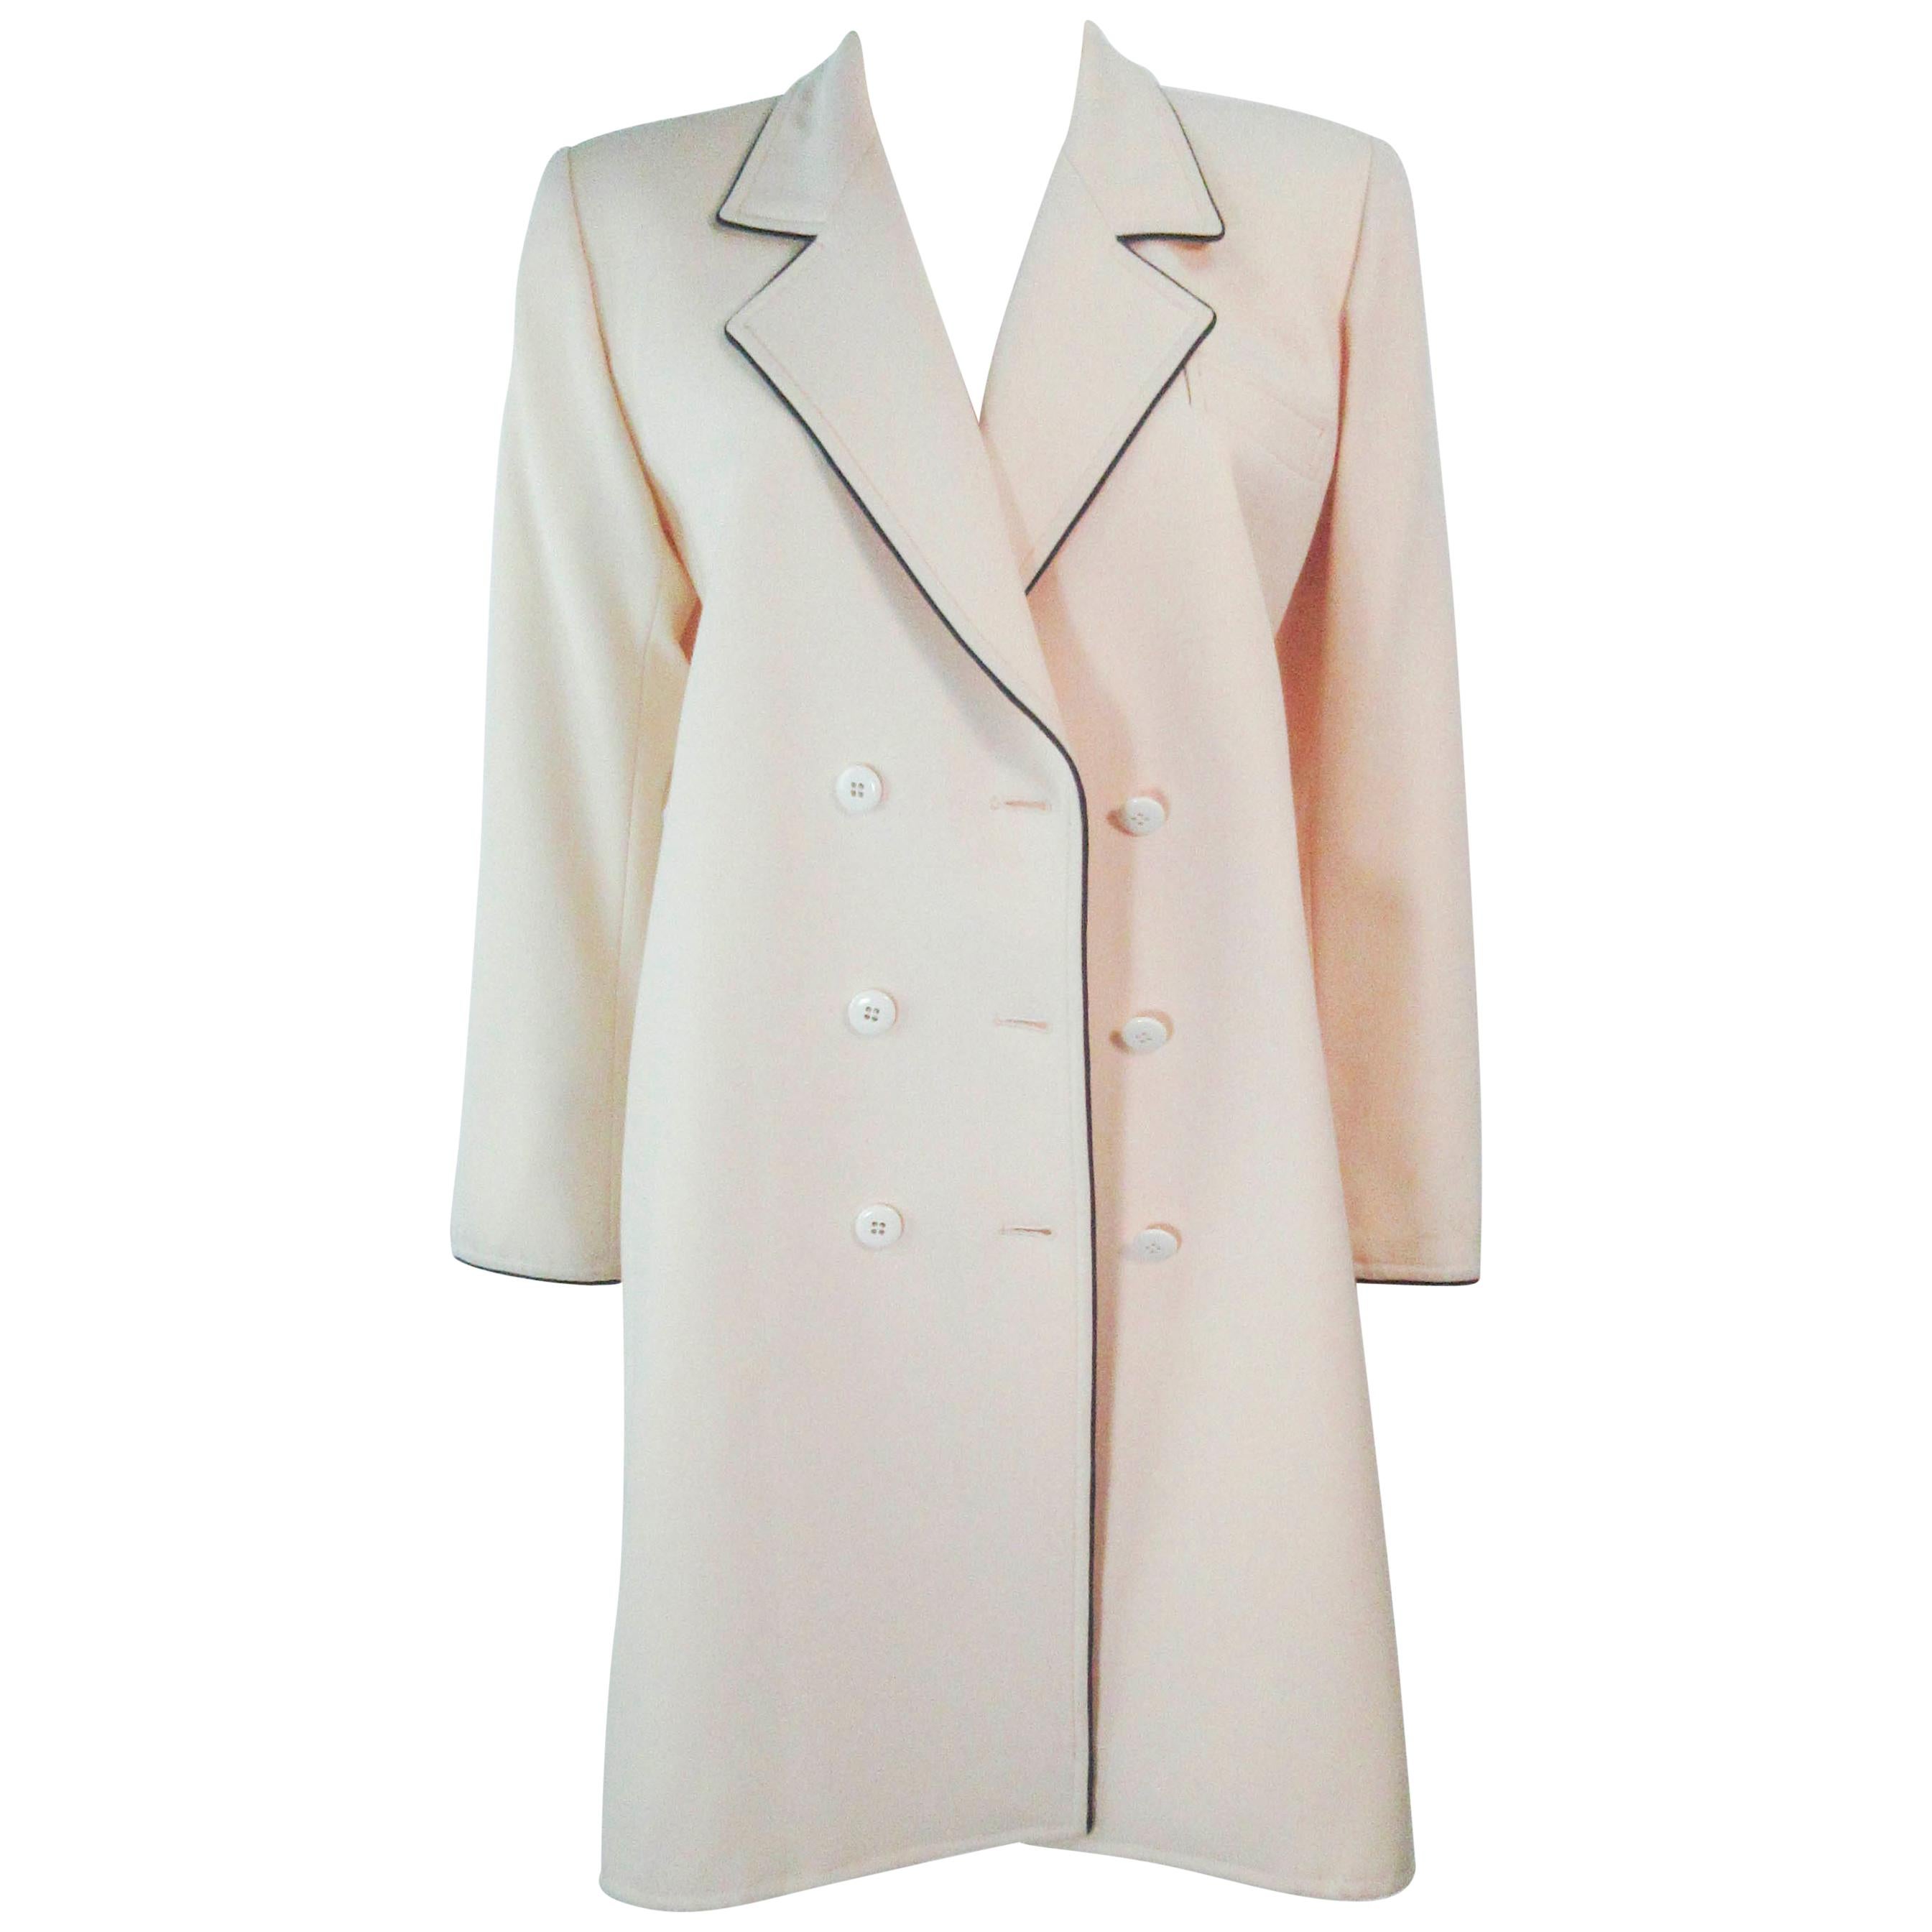 YVES SAINT LAURENT Ivory Cream Tuxedo Style Dress Coat Size Medium